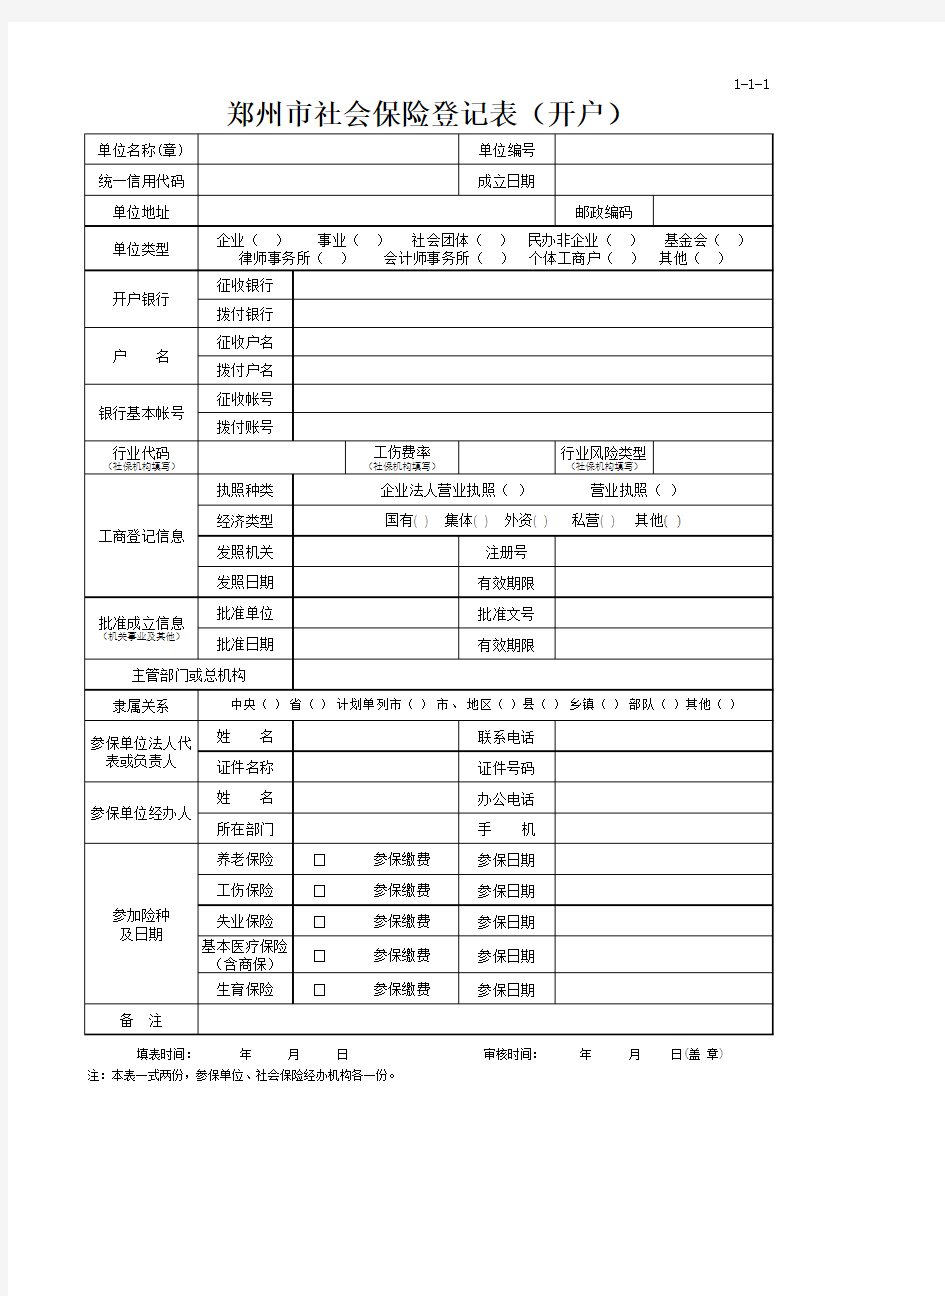 1、郑州市社会保险登记表(开户)